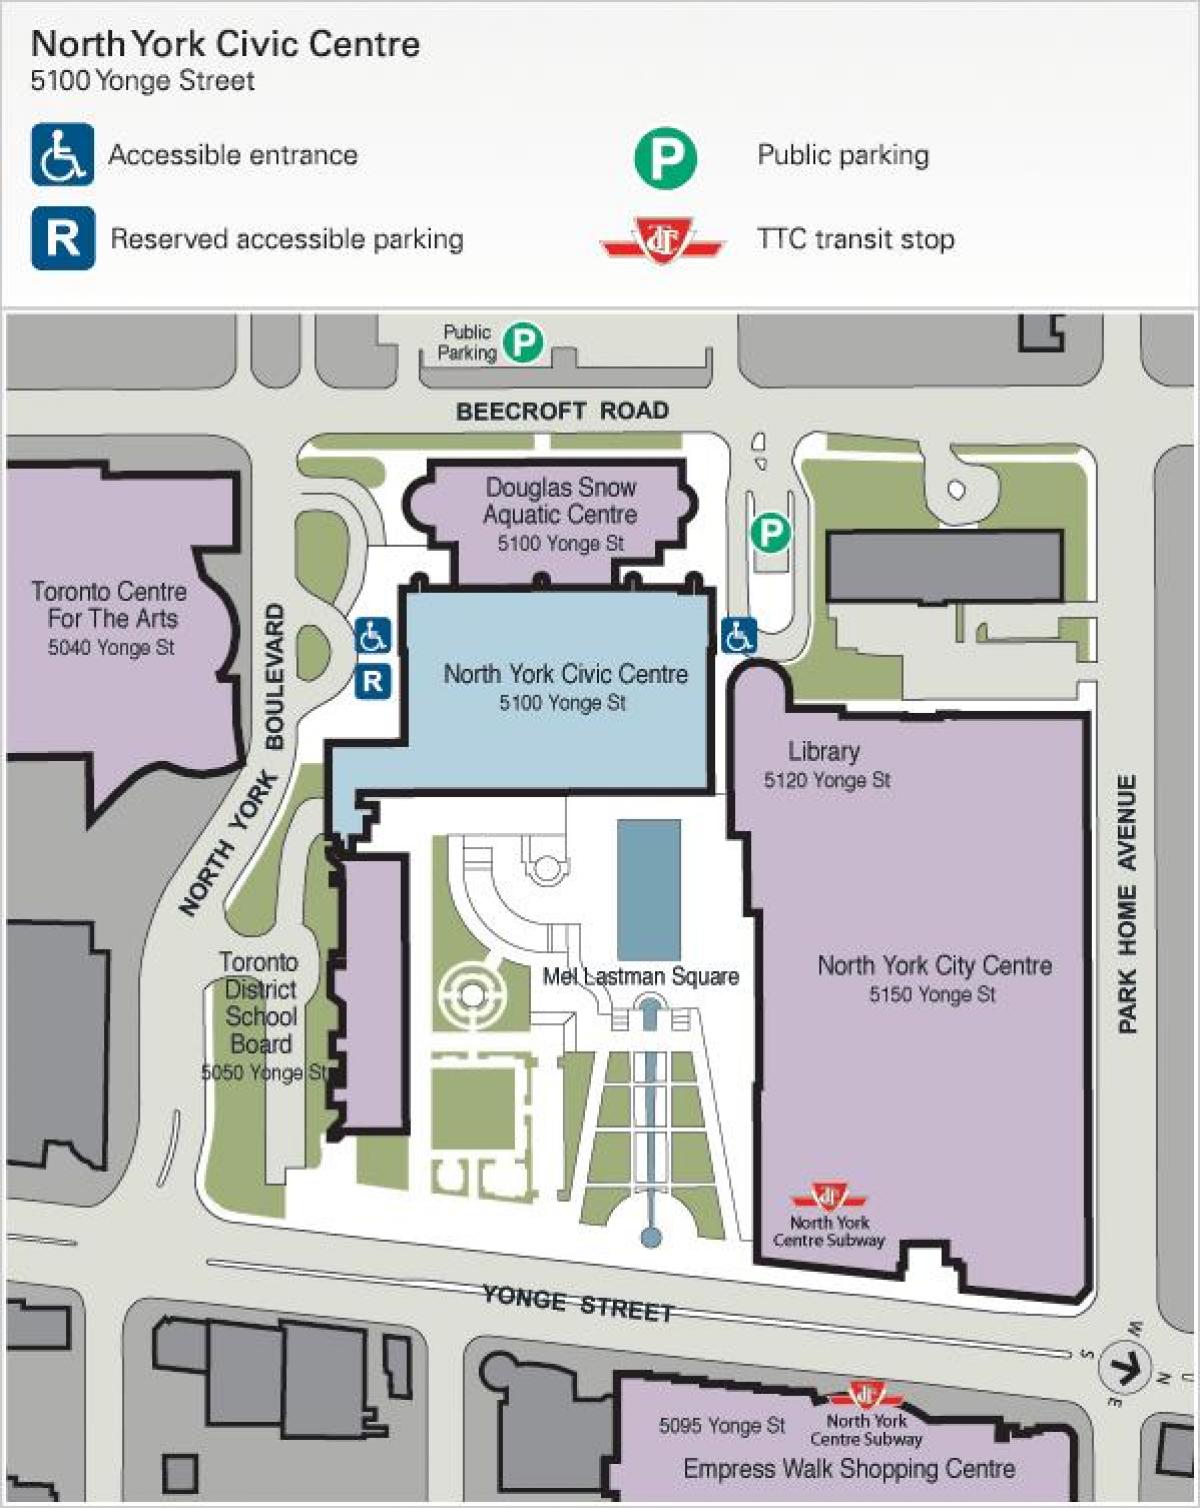 Mapa de Toronto Centre for the Arts de estacionamiento